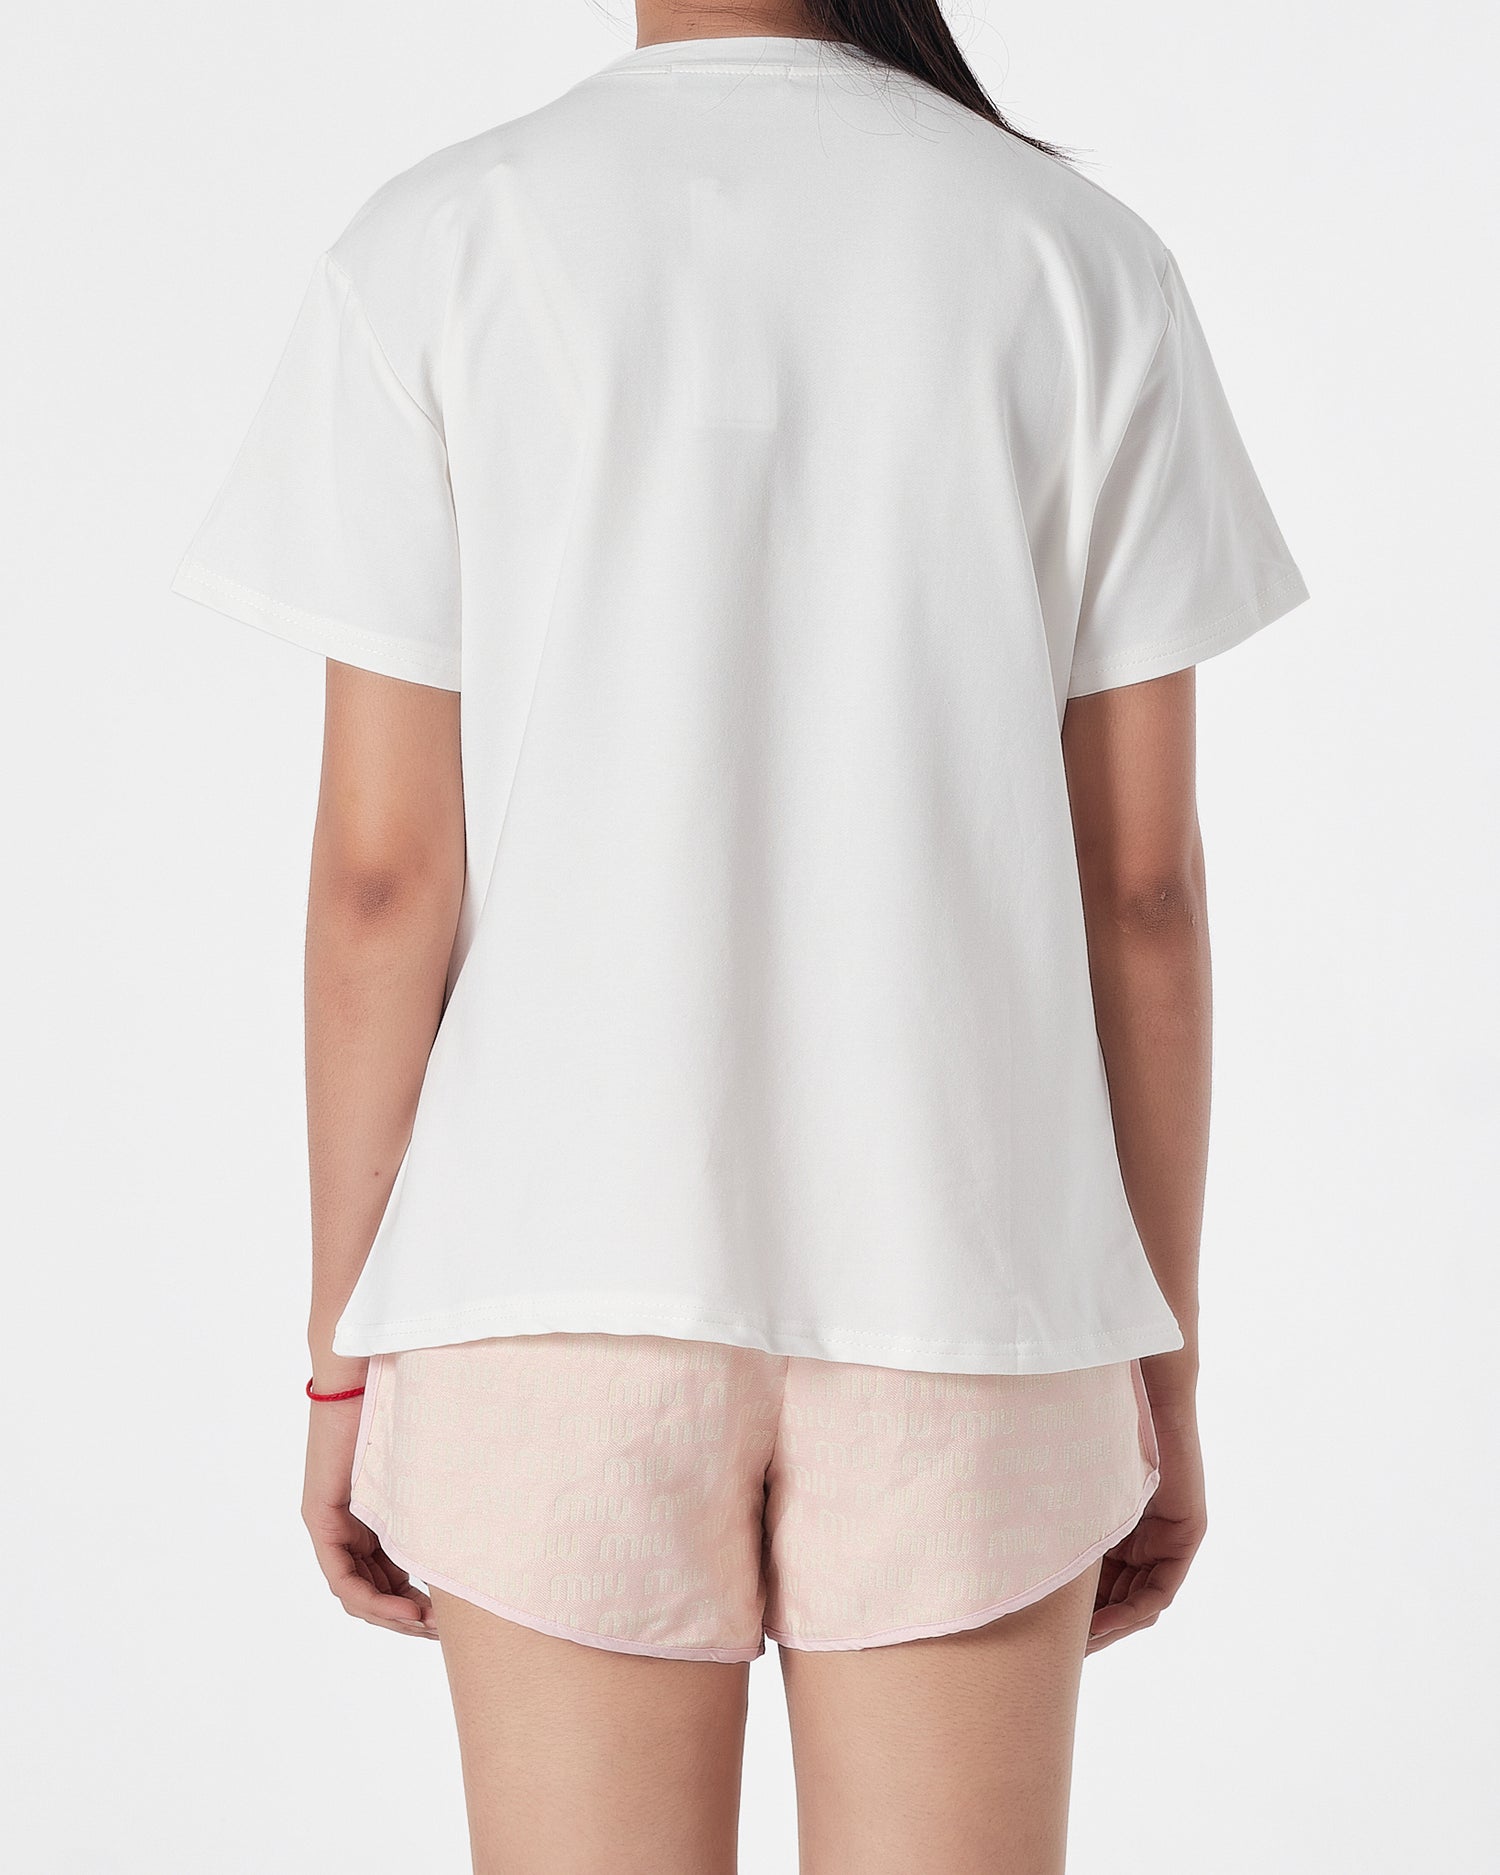 MIU MIU Lady White T-Shirt + Shorts 2 Piece Outfit 20.90